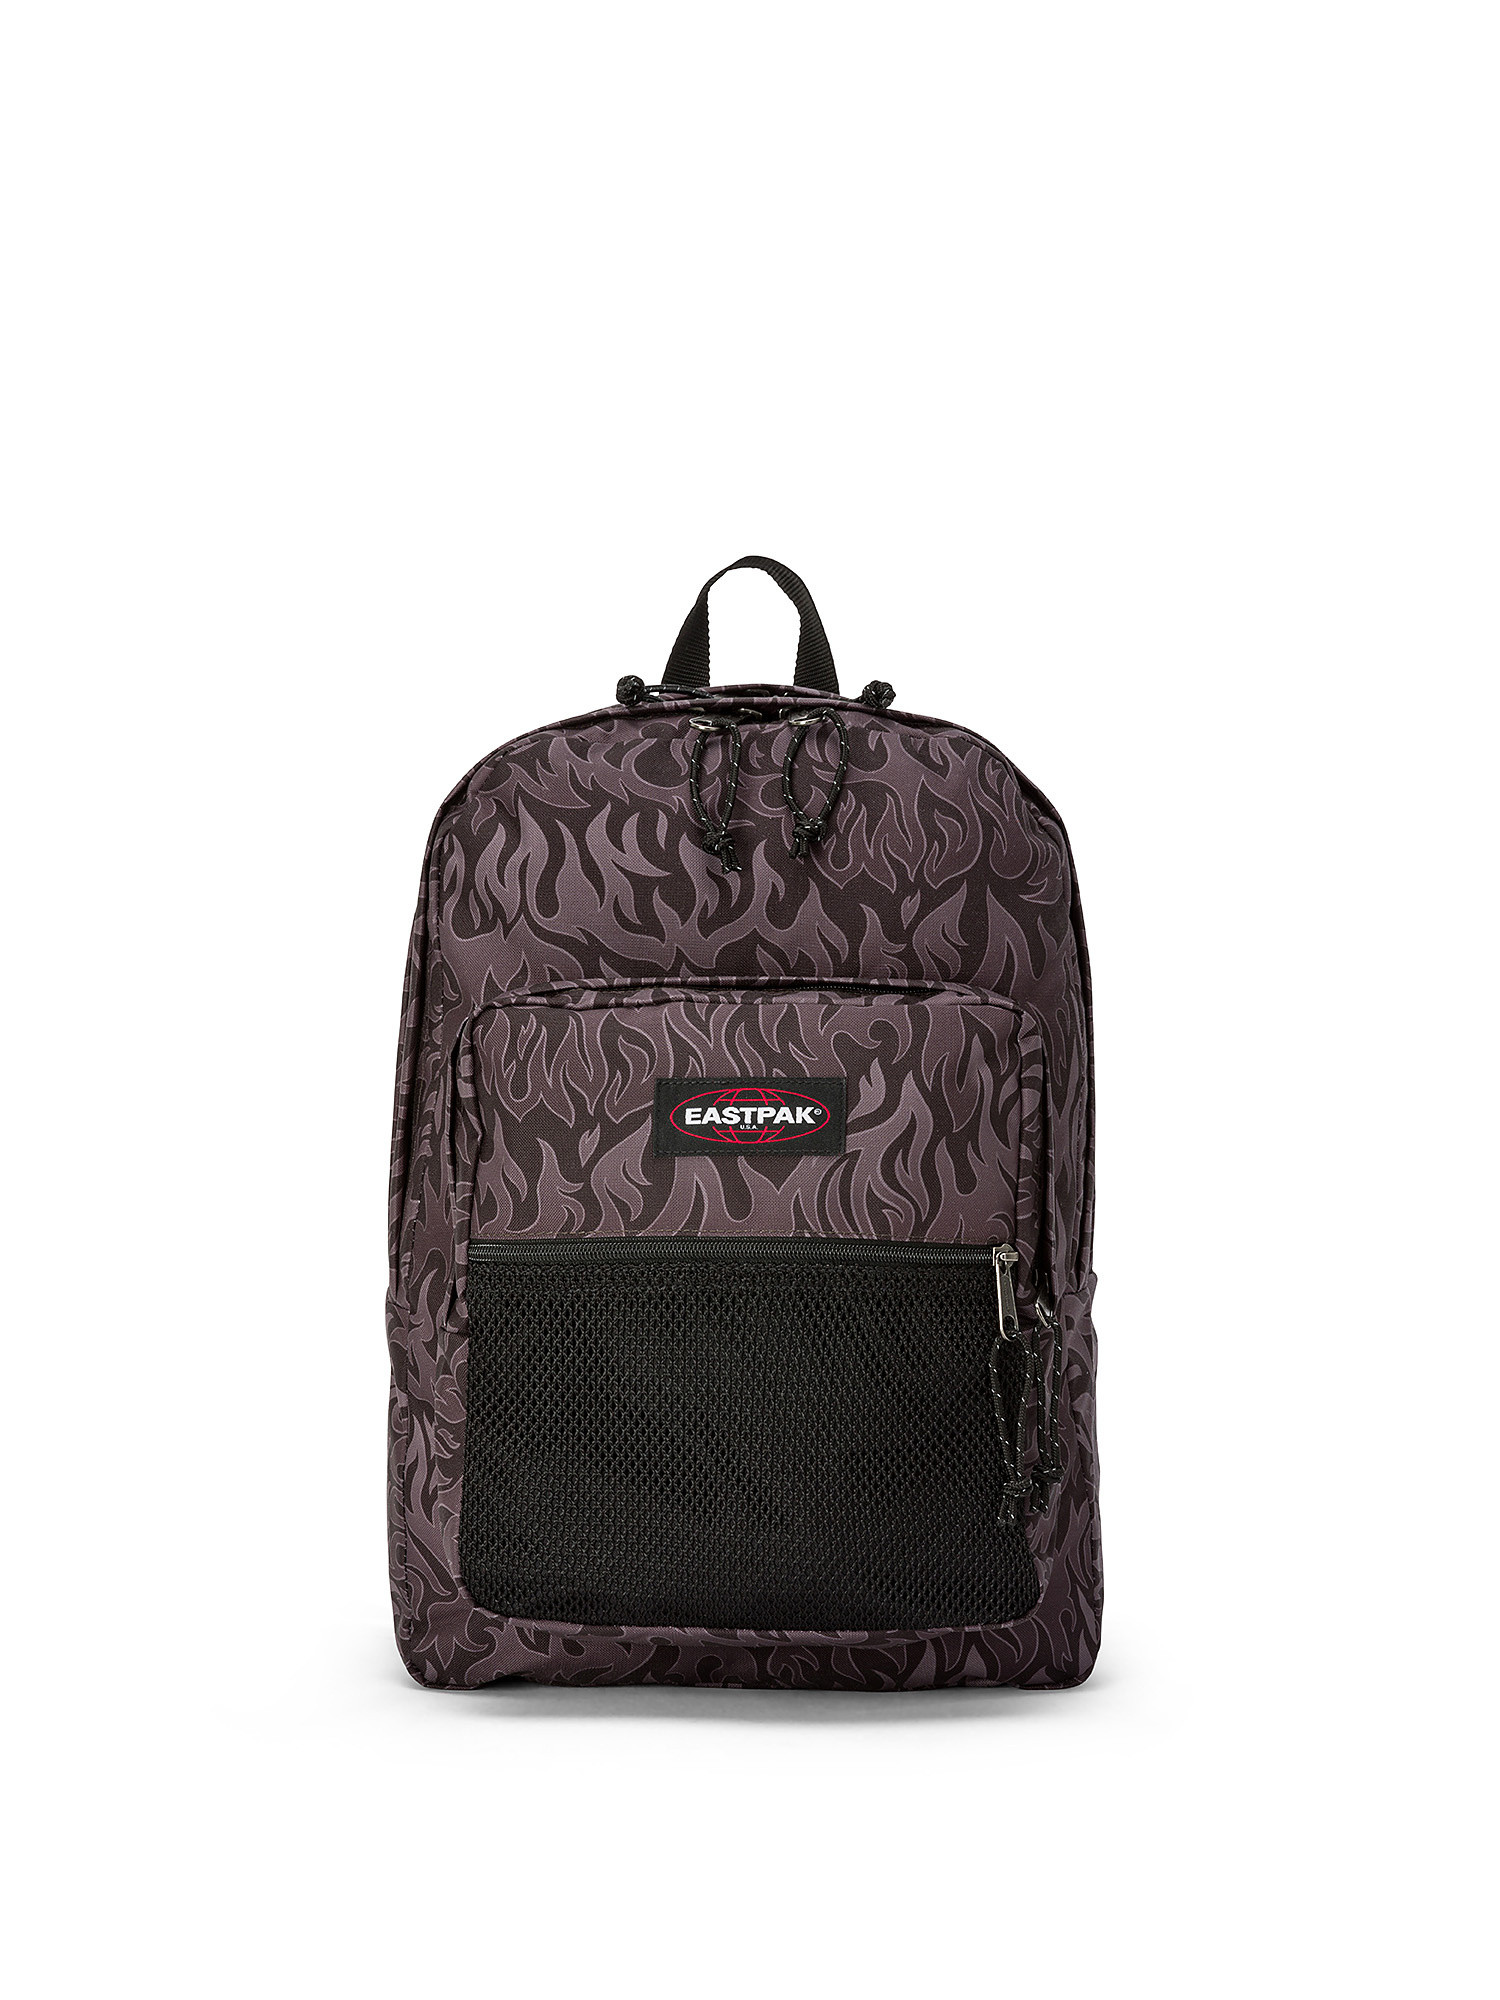 Eastpak - Pinnacle Skate Flames backpack, Black, large image number 0